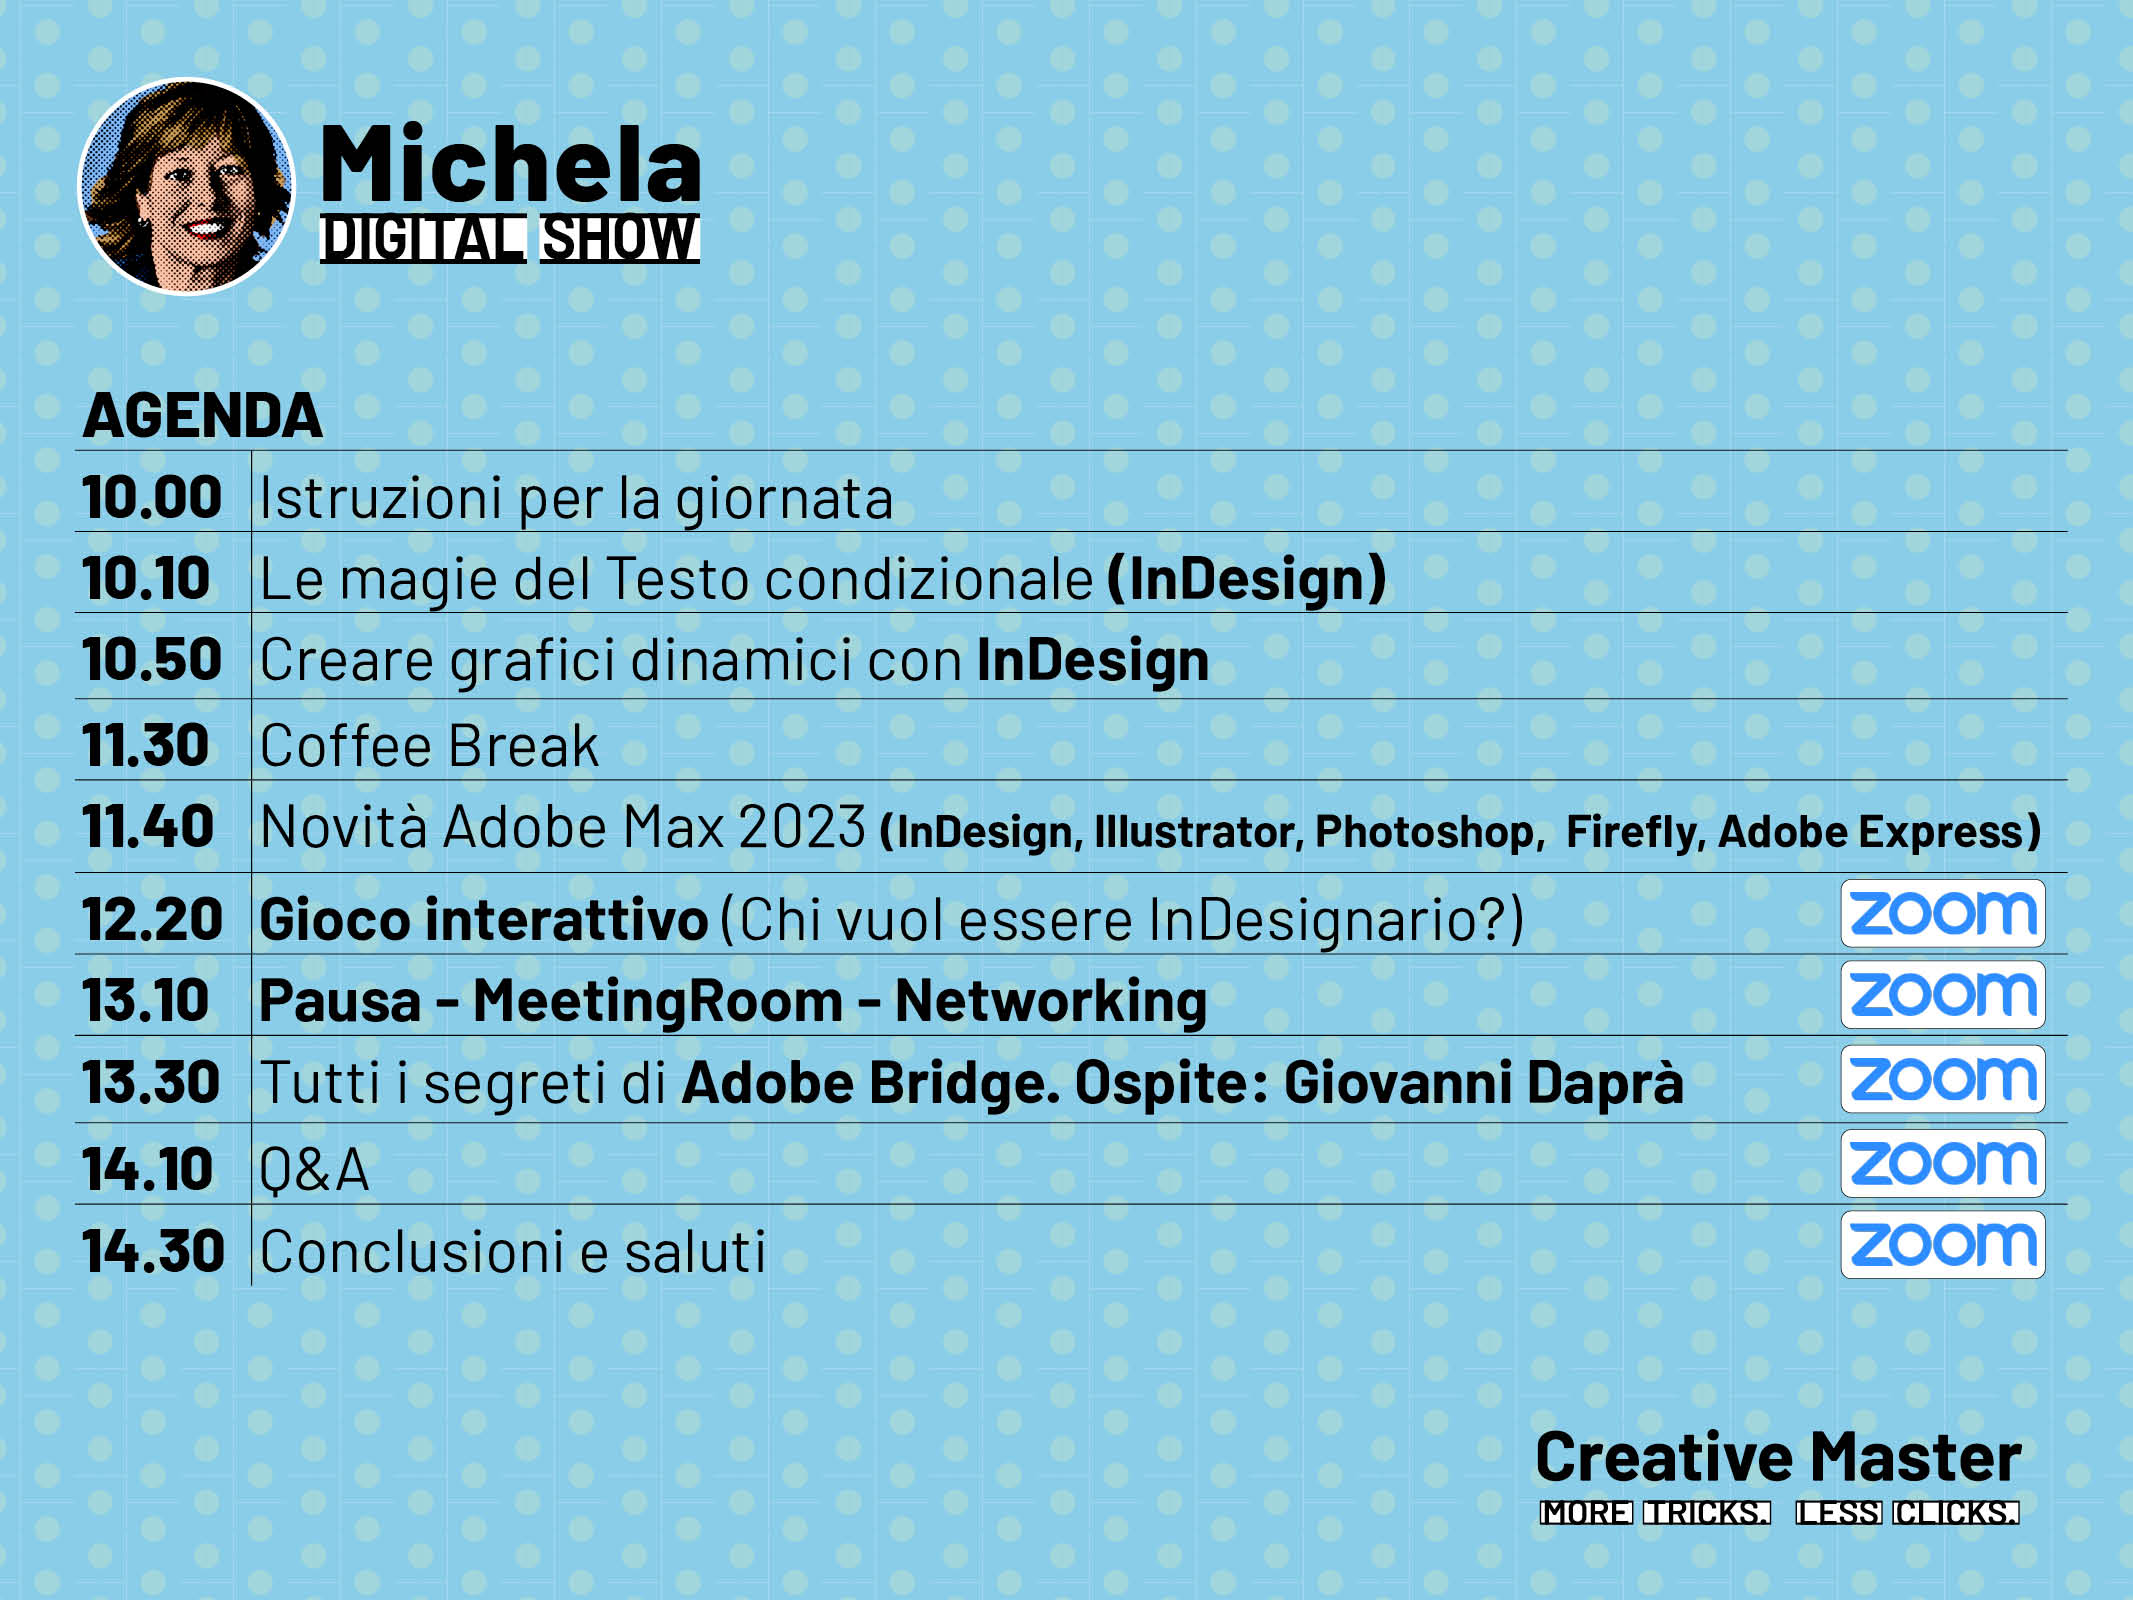 Clicca e scarica l'Agenda del Michela Digital Show 6